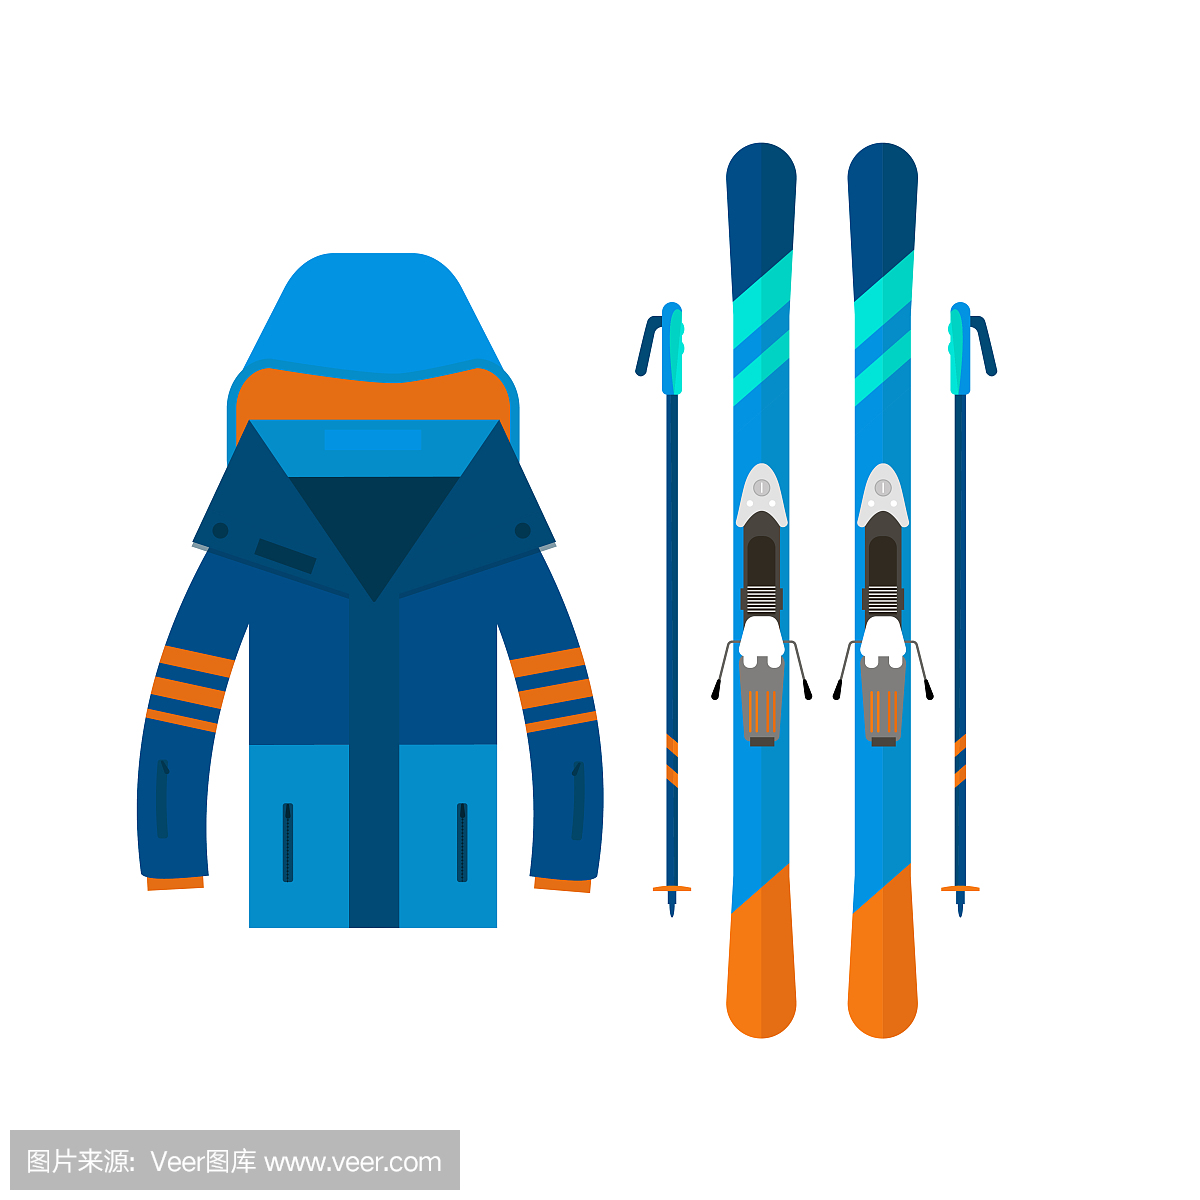 冬季运动图标夹克和滑雪。滑雪和单板滑雪成套设备